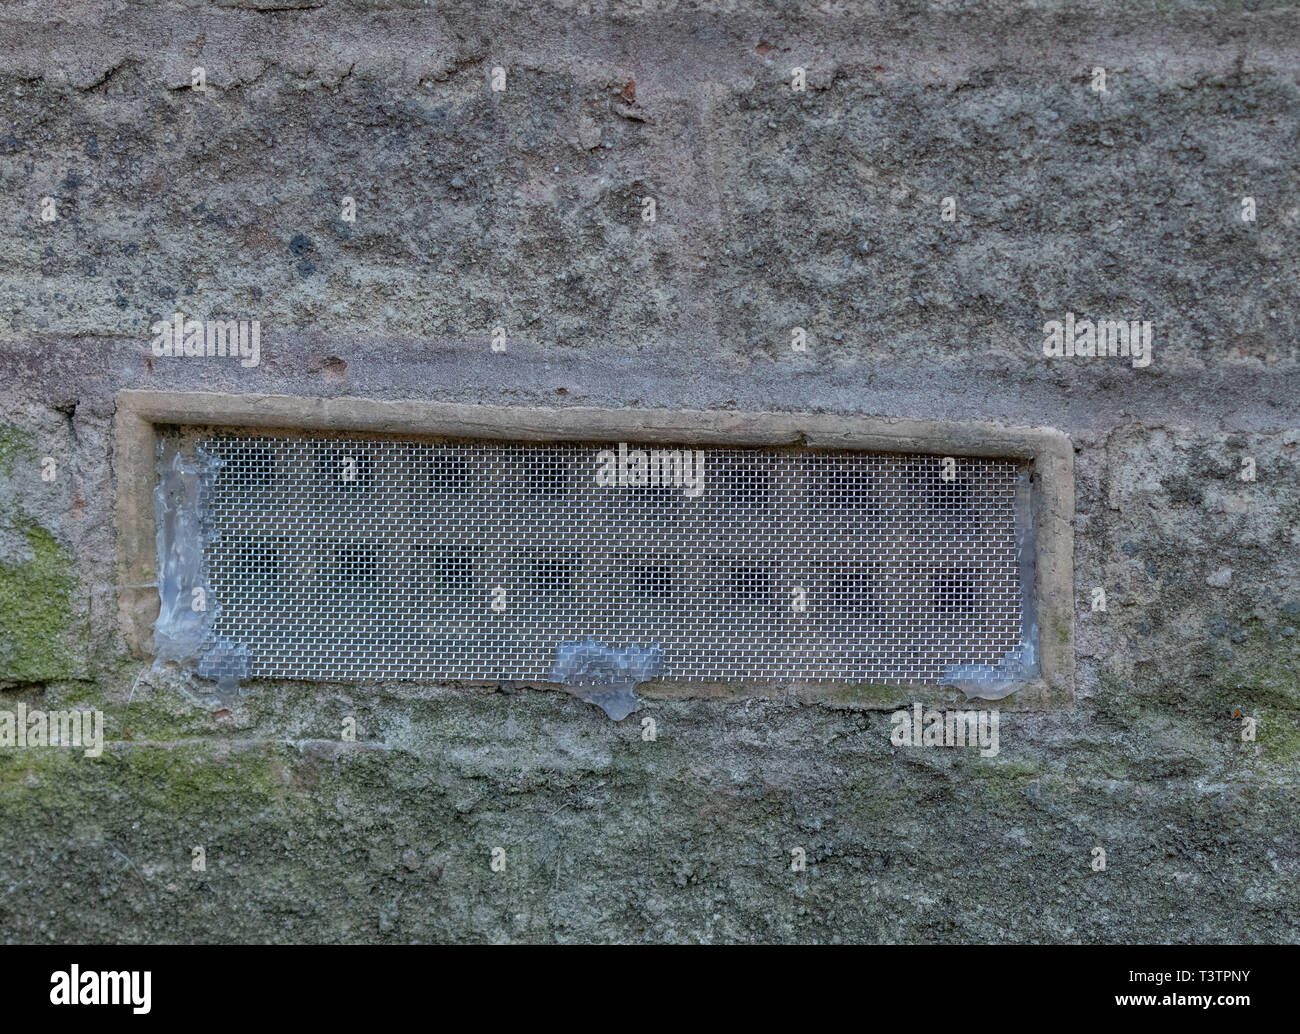 Luft im Mauerwerk durch Gitter abgedeckt vent Maus Eintrag zu verhindern. Stockfoto